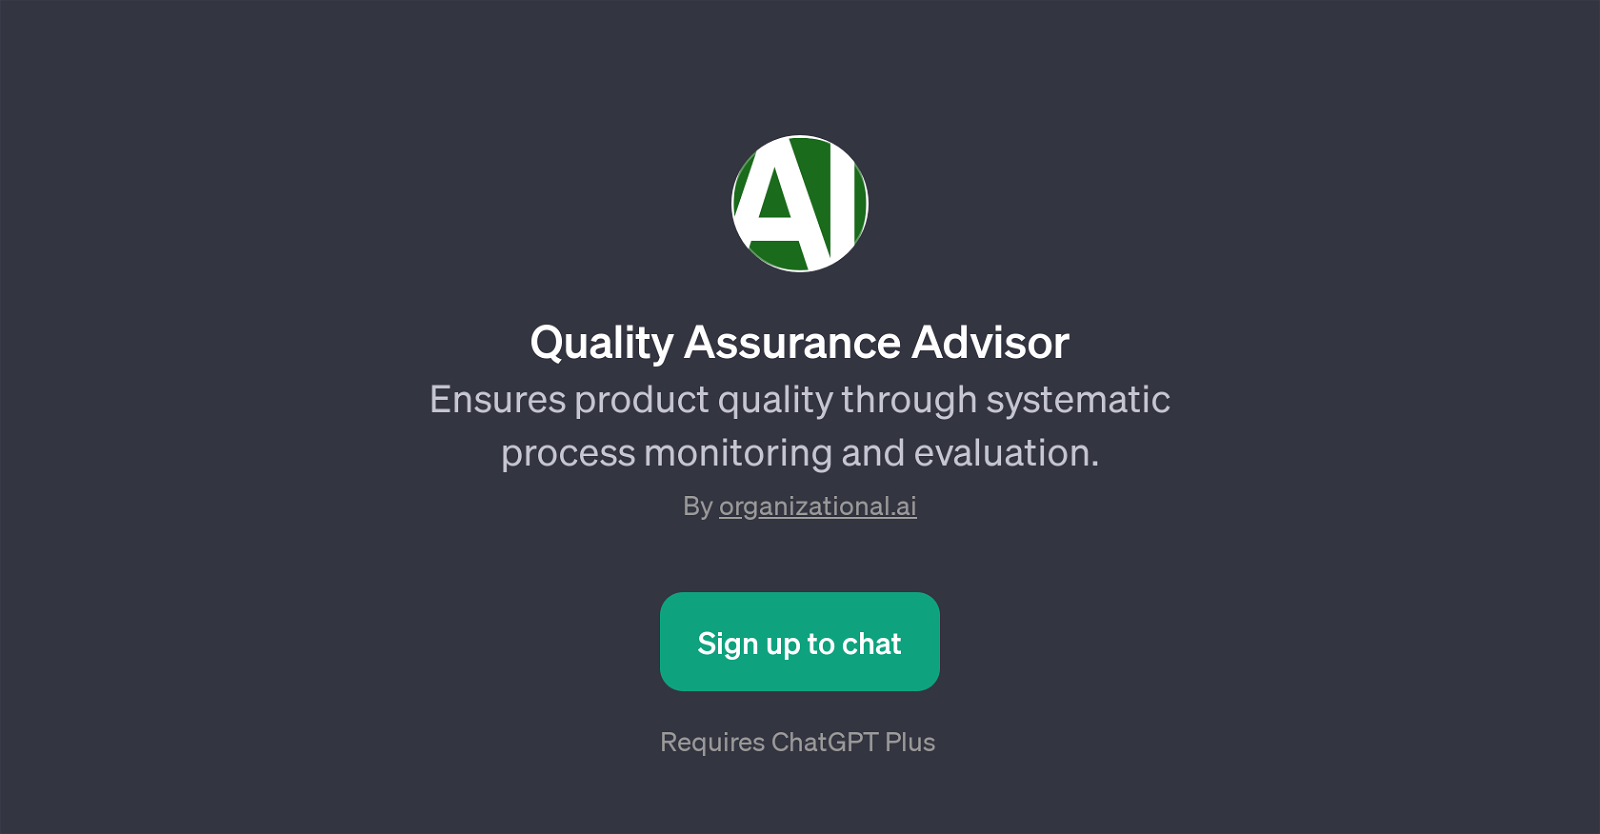 Quality Assurance Advisor website